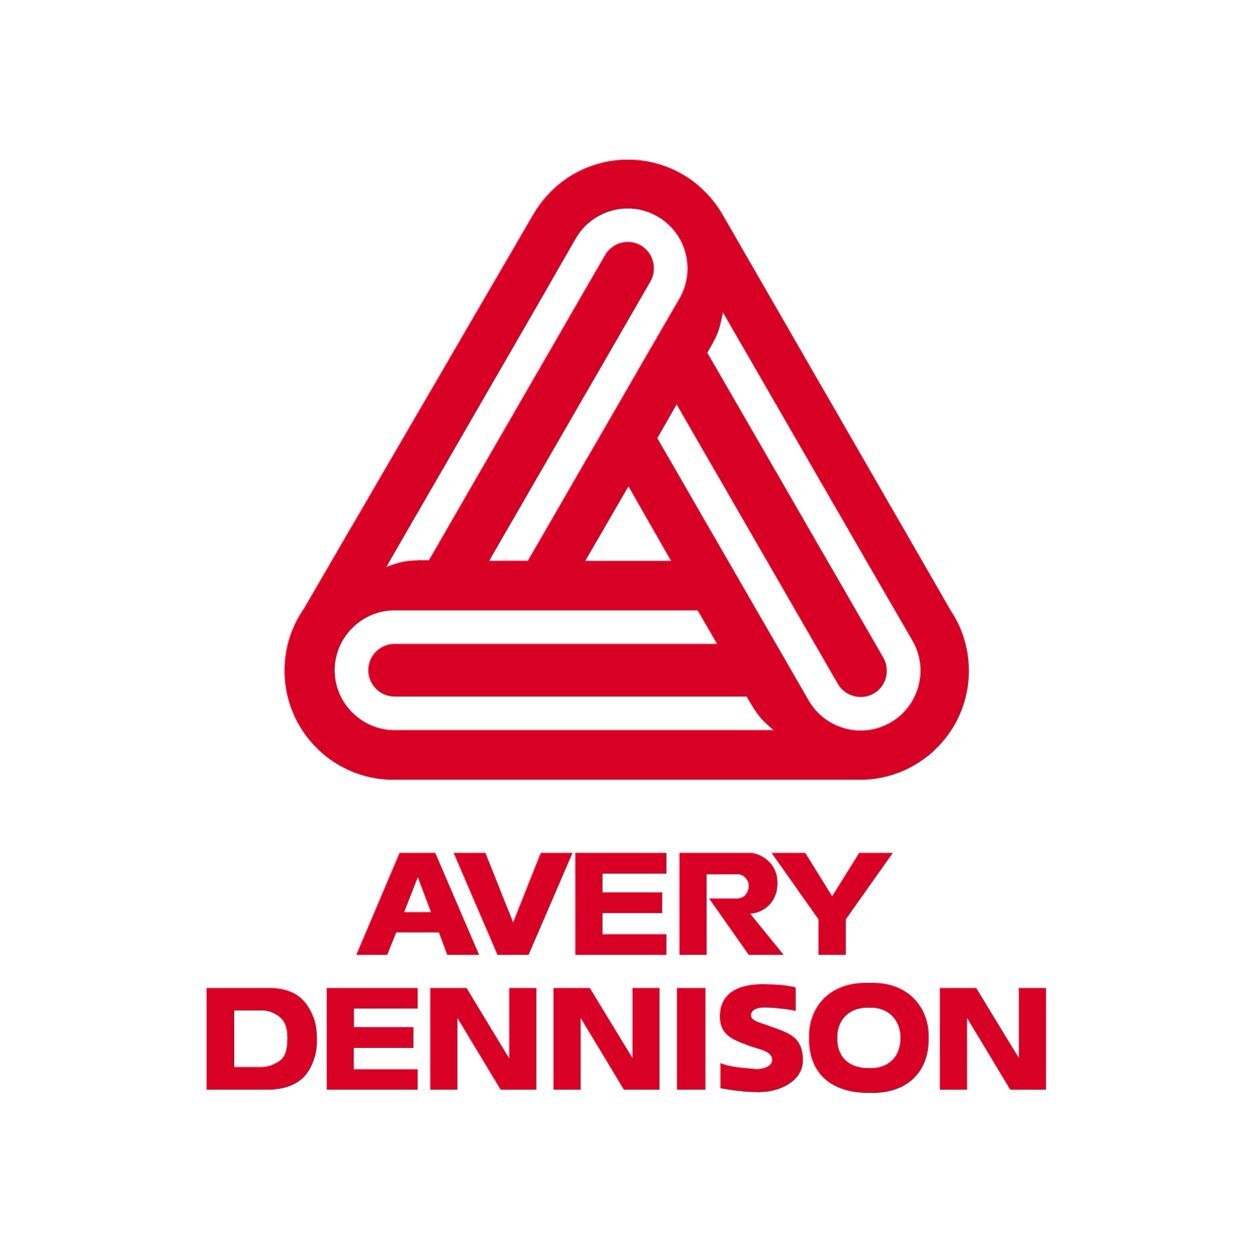 Le ruban Avery Dennison Acrylic Foam Bond (AFB™) est utilisé pour les applications nécessitant une adhérence haute performance.